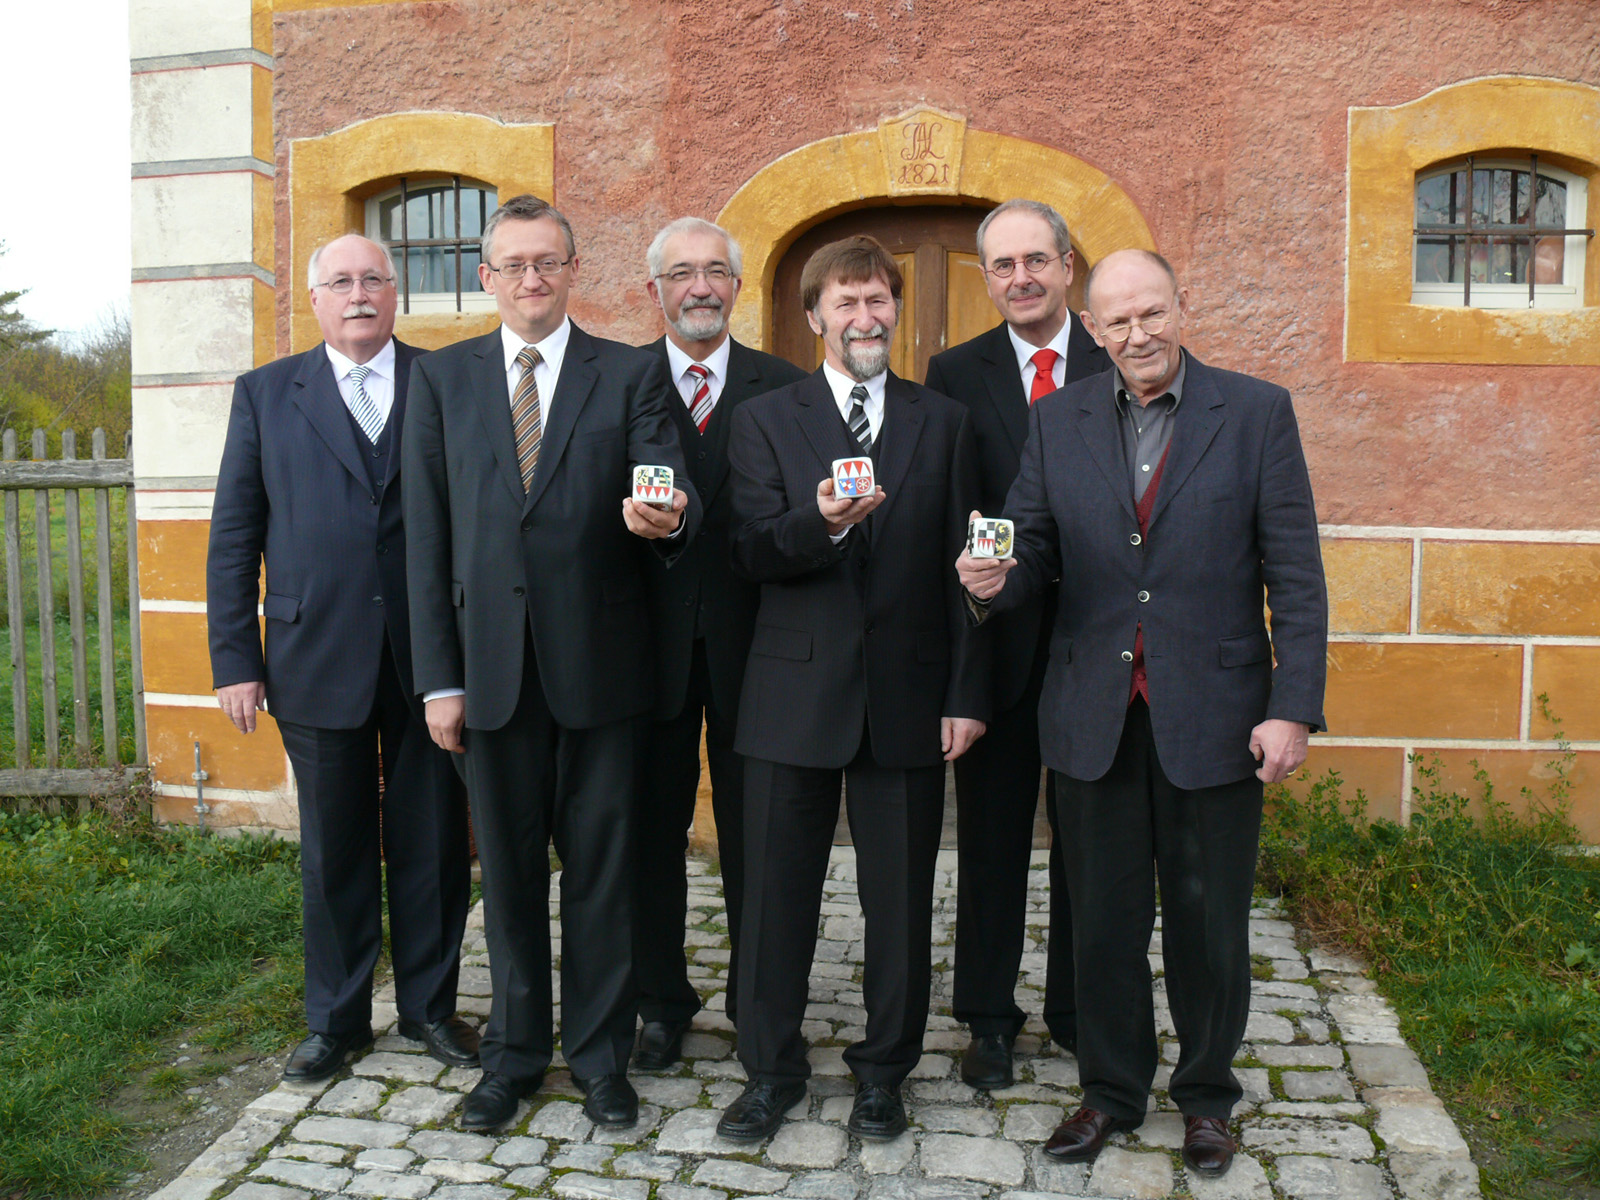 Verleihung des Frankenwürfels 2010 in Bad Windsheim